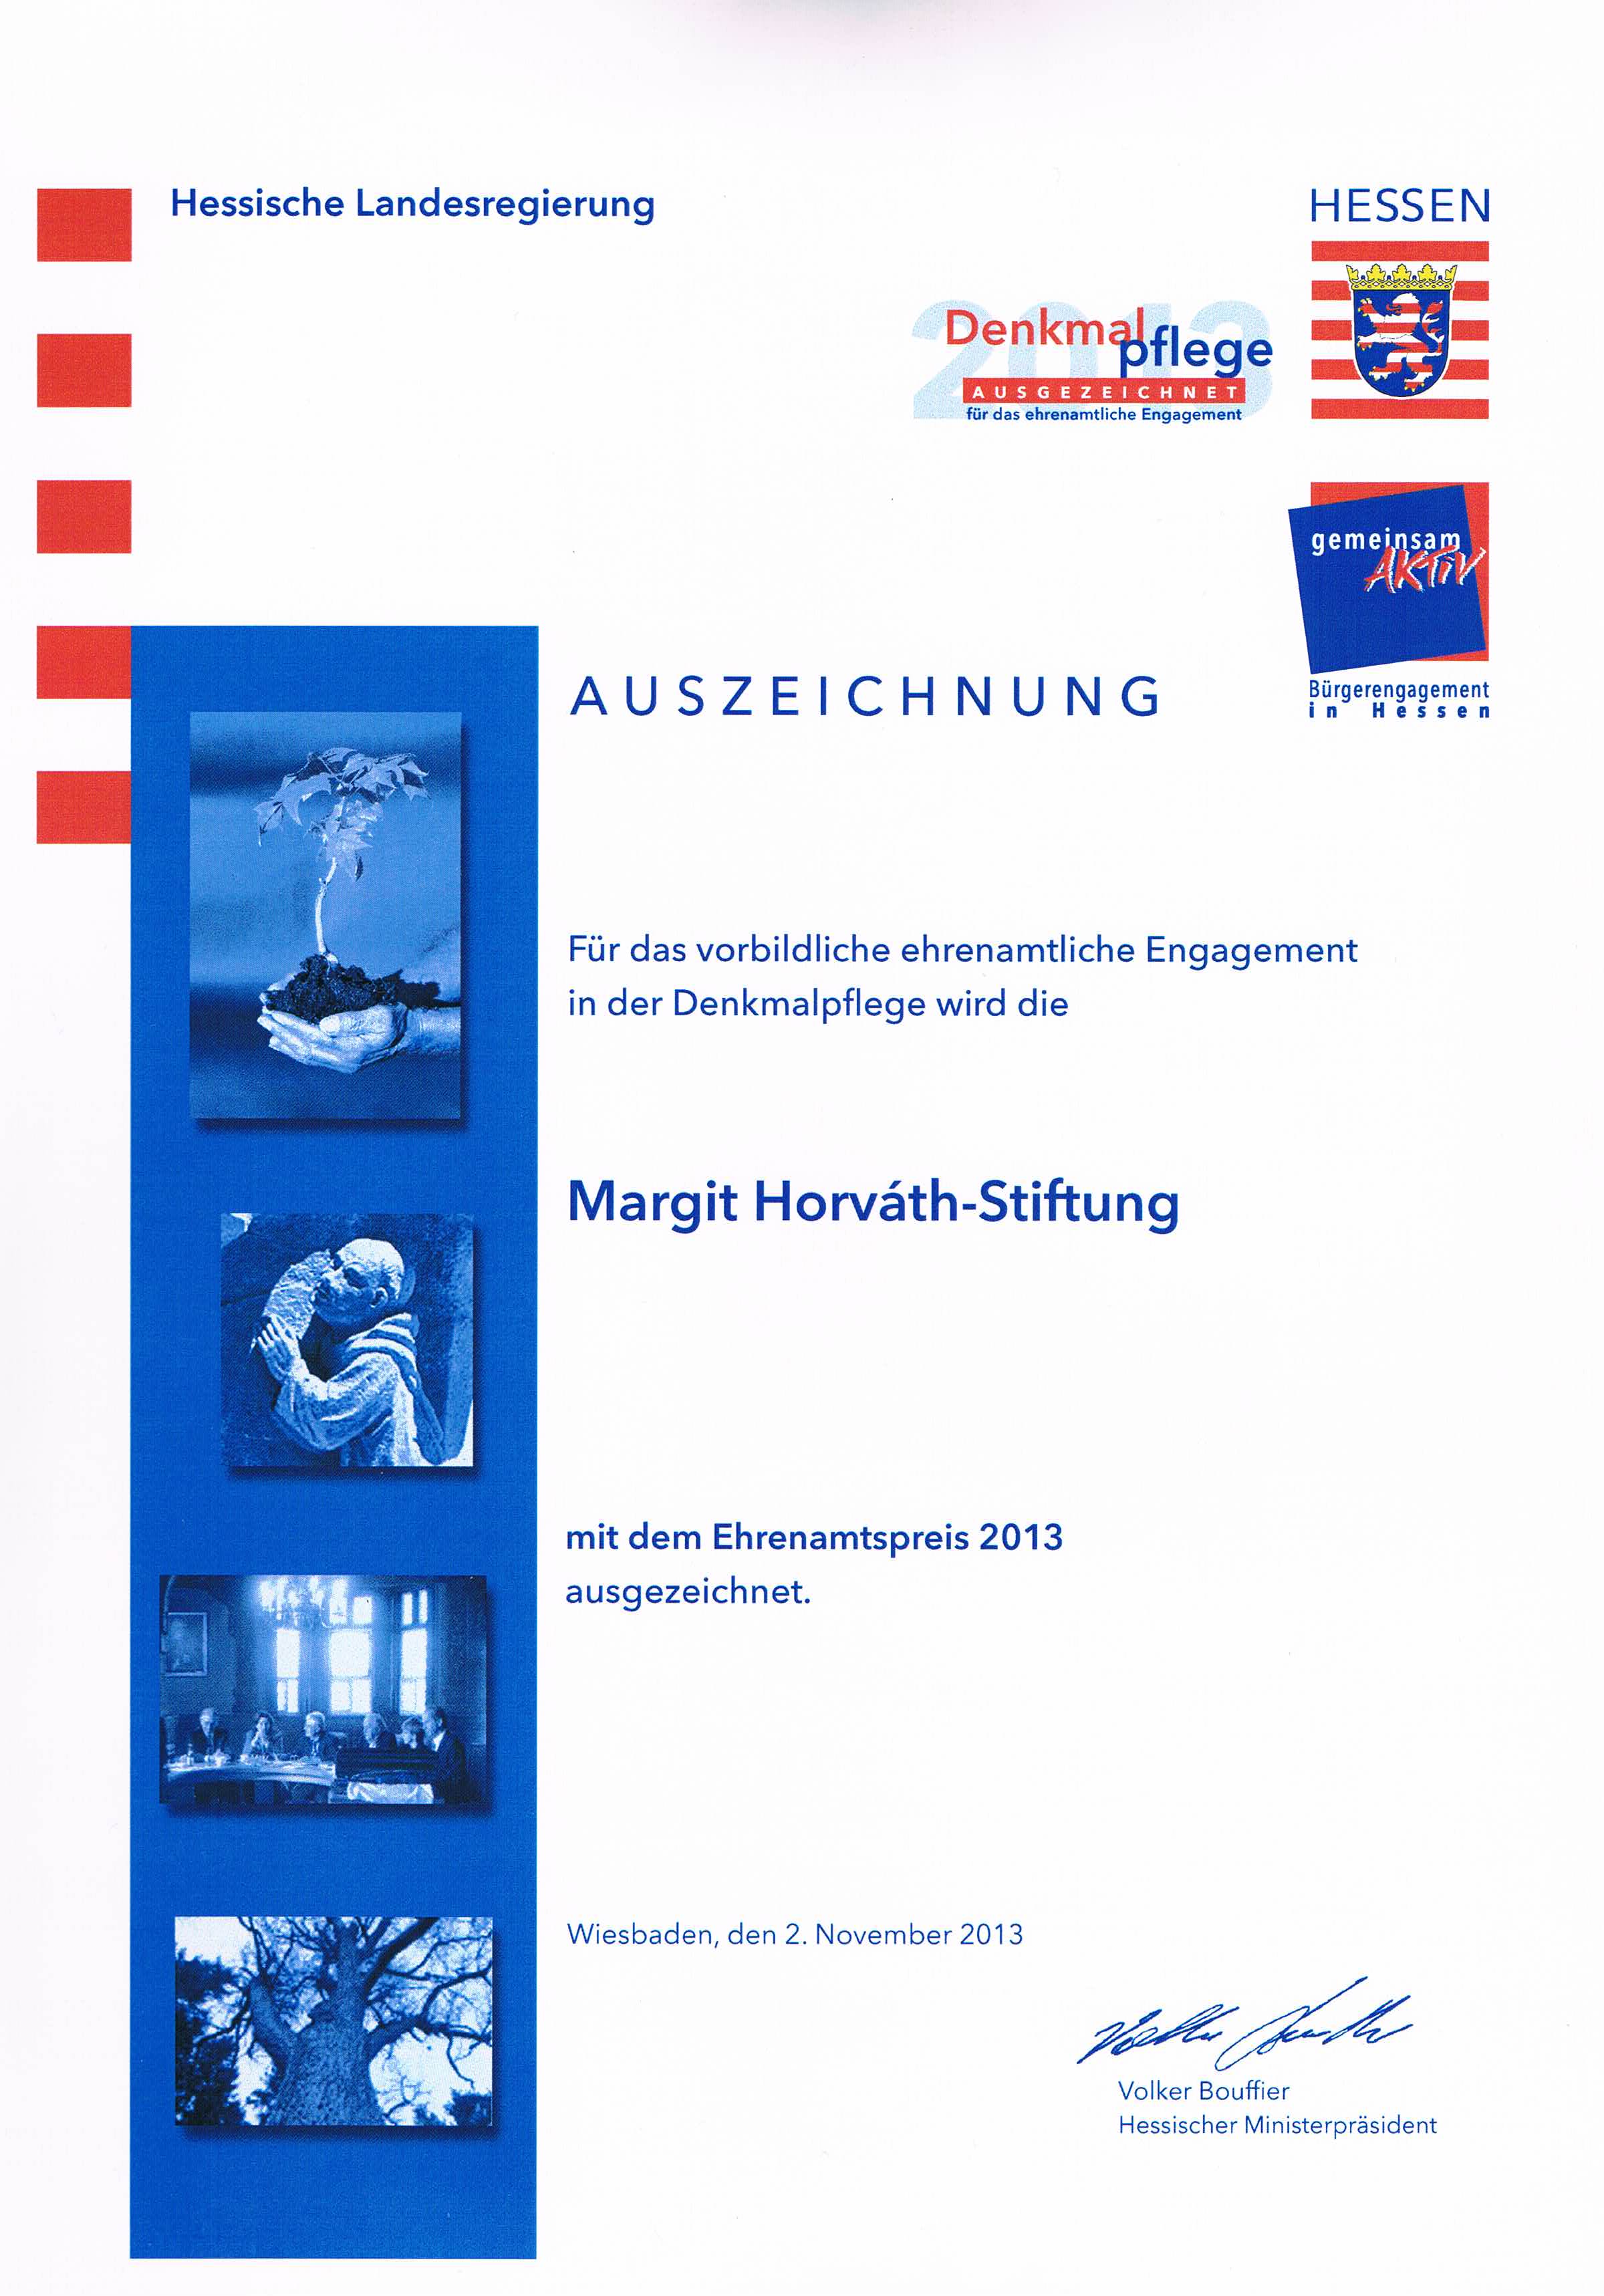 Die Margit-Horváth-Stiftung erhält am 2. November 2013 von der Landesregierung die Auszeichnung  für vorbildliches ehrenamtliches Engagement.